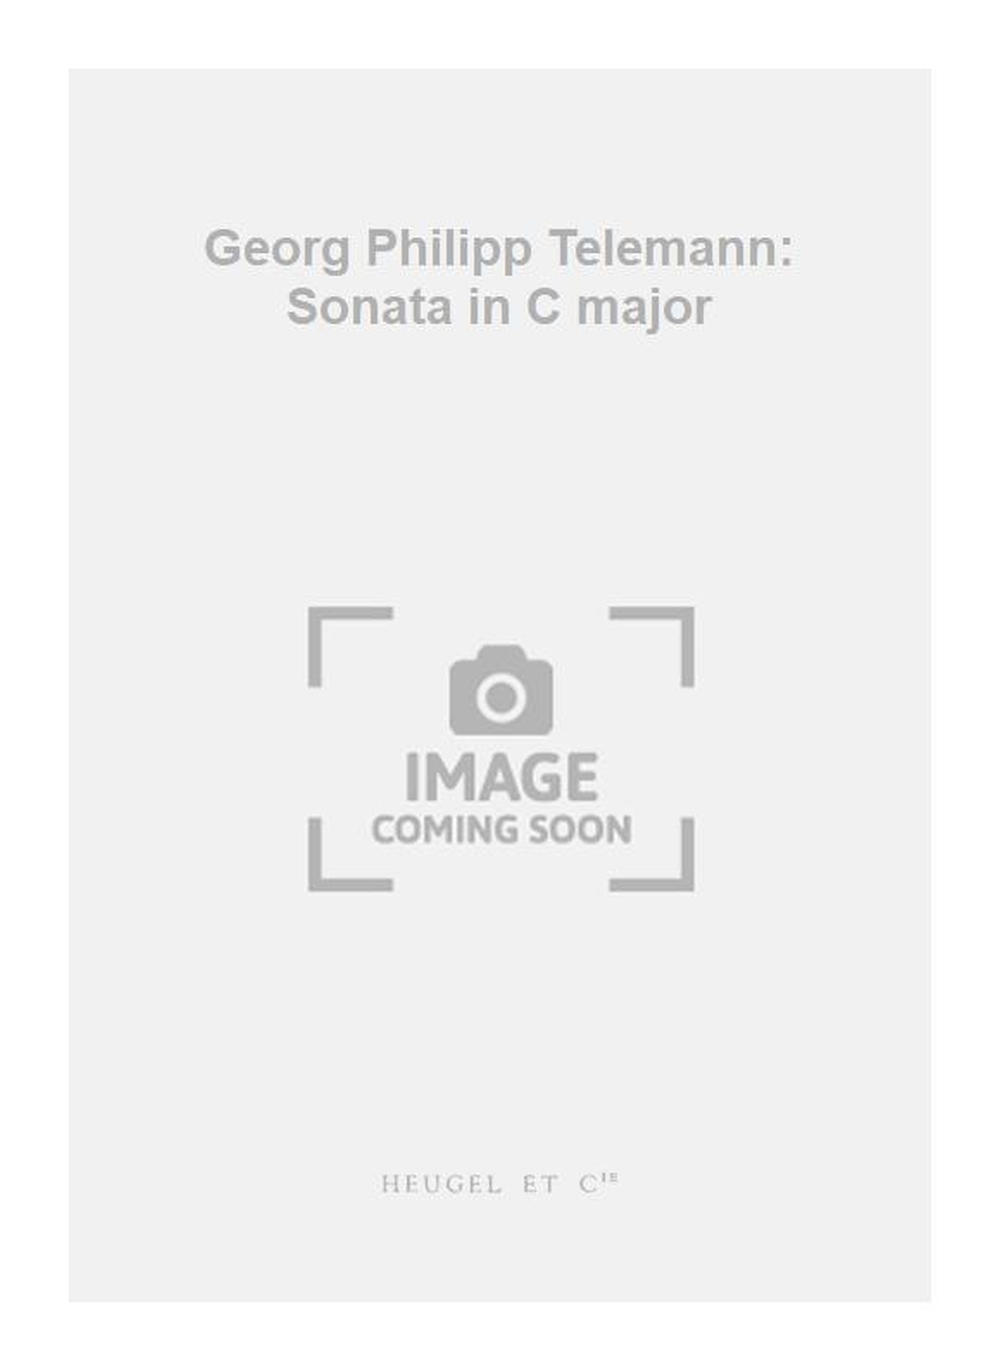 Georg Philipp Telemann: Georg Philipp Telemann: Sonata in C major